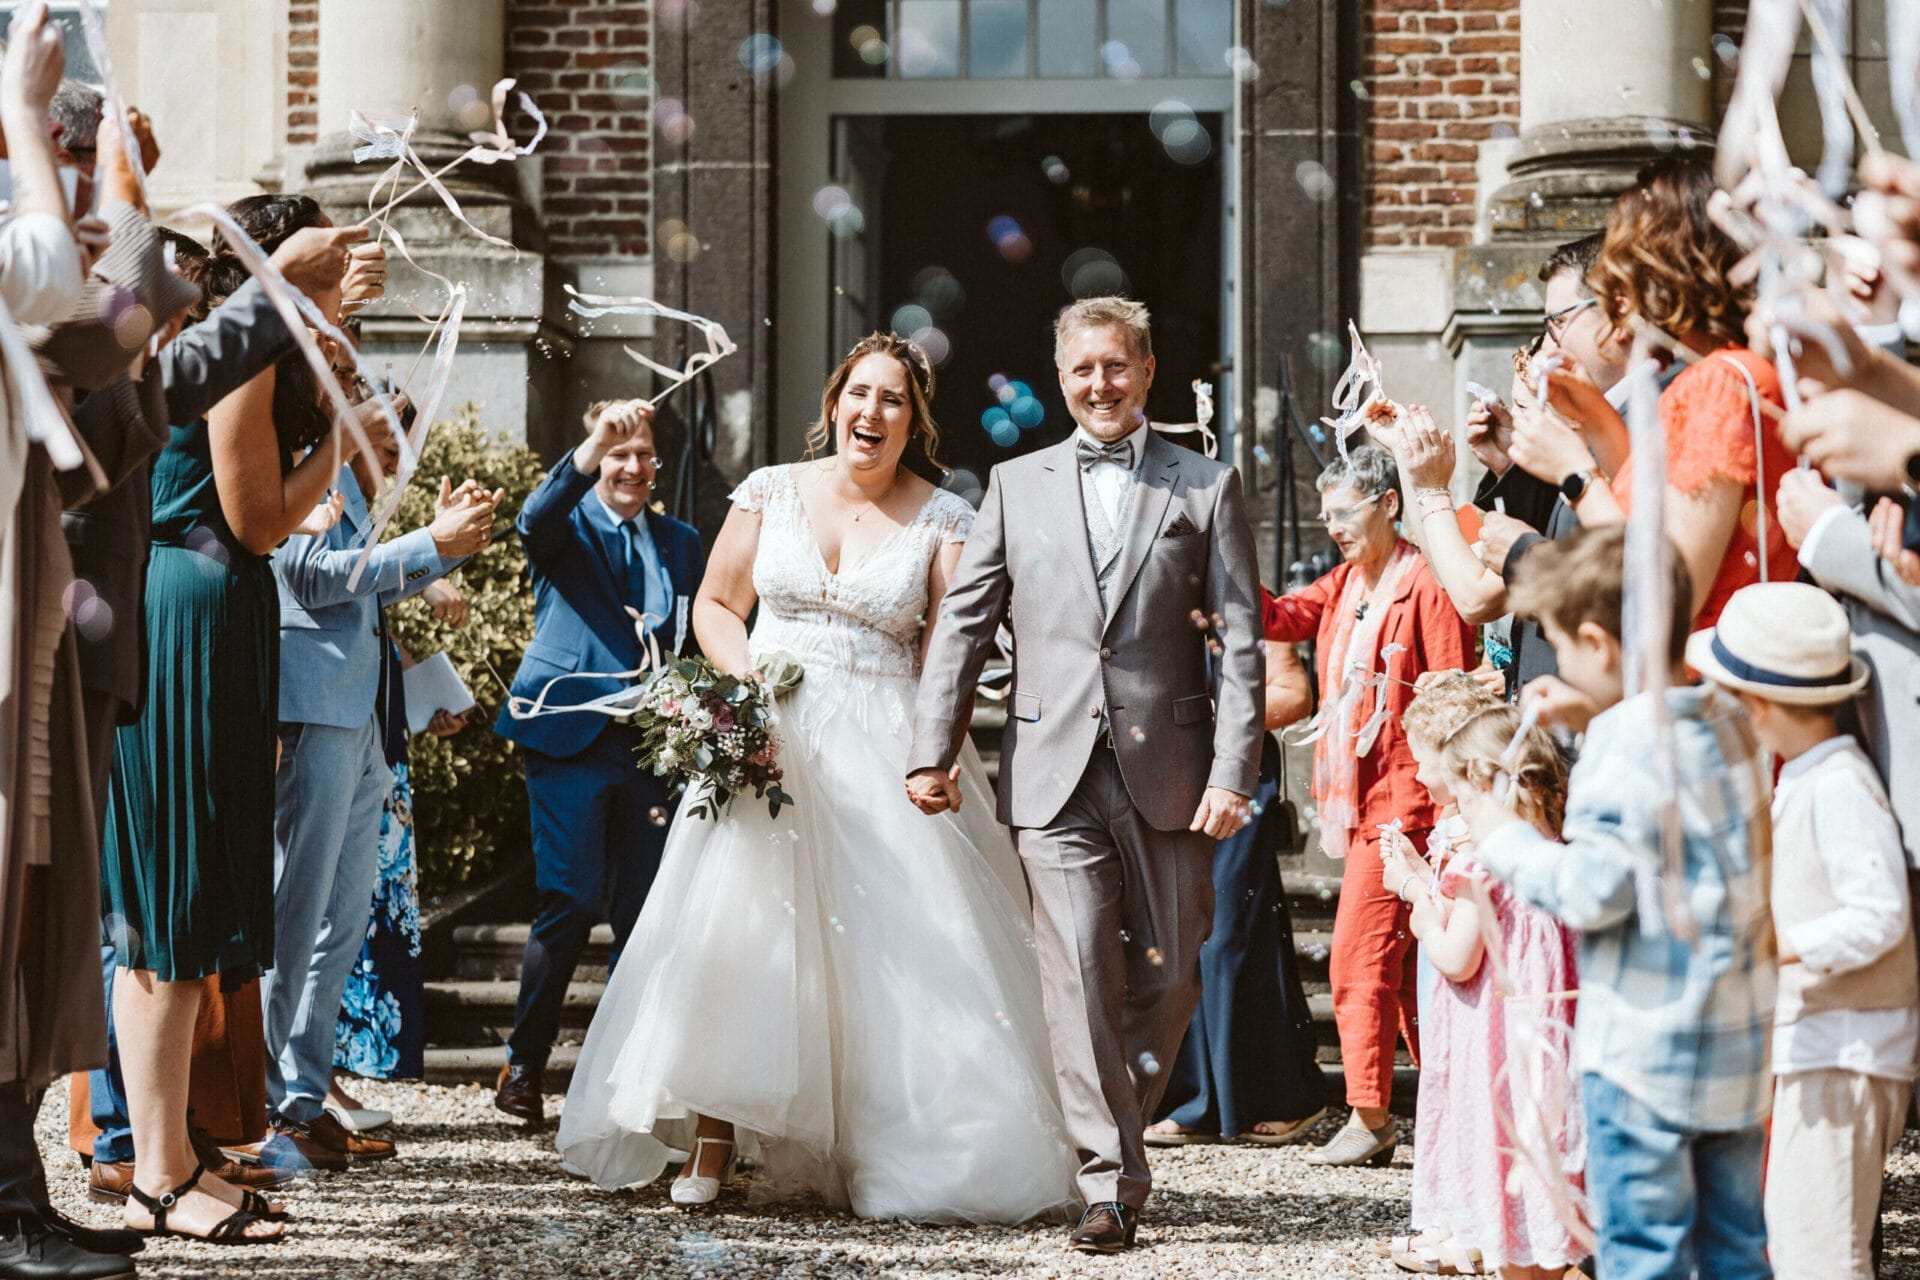 Hochzeit Heiraten Hochzeitsfotograf Dominik Neugebauer - Hochzeitspaar geht Hand in Hand am Spalier der Hochzeitsgäste vorbei. Hochzeitsauszug mit bunten Seifenblasen, Kindern, die Fähnchen schwingen sowie lachende Gäste sind zu erkennen.